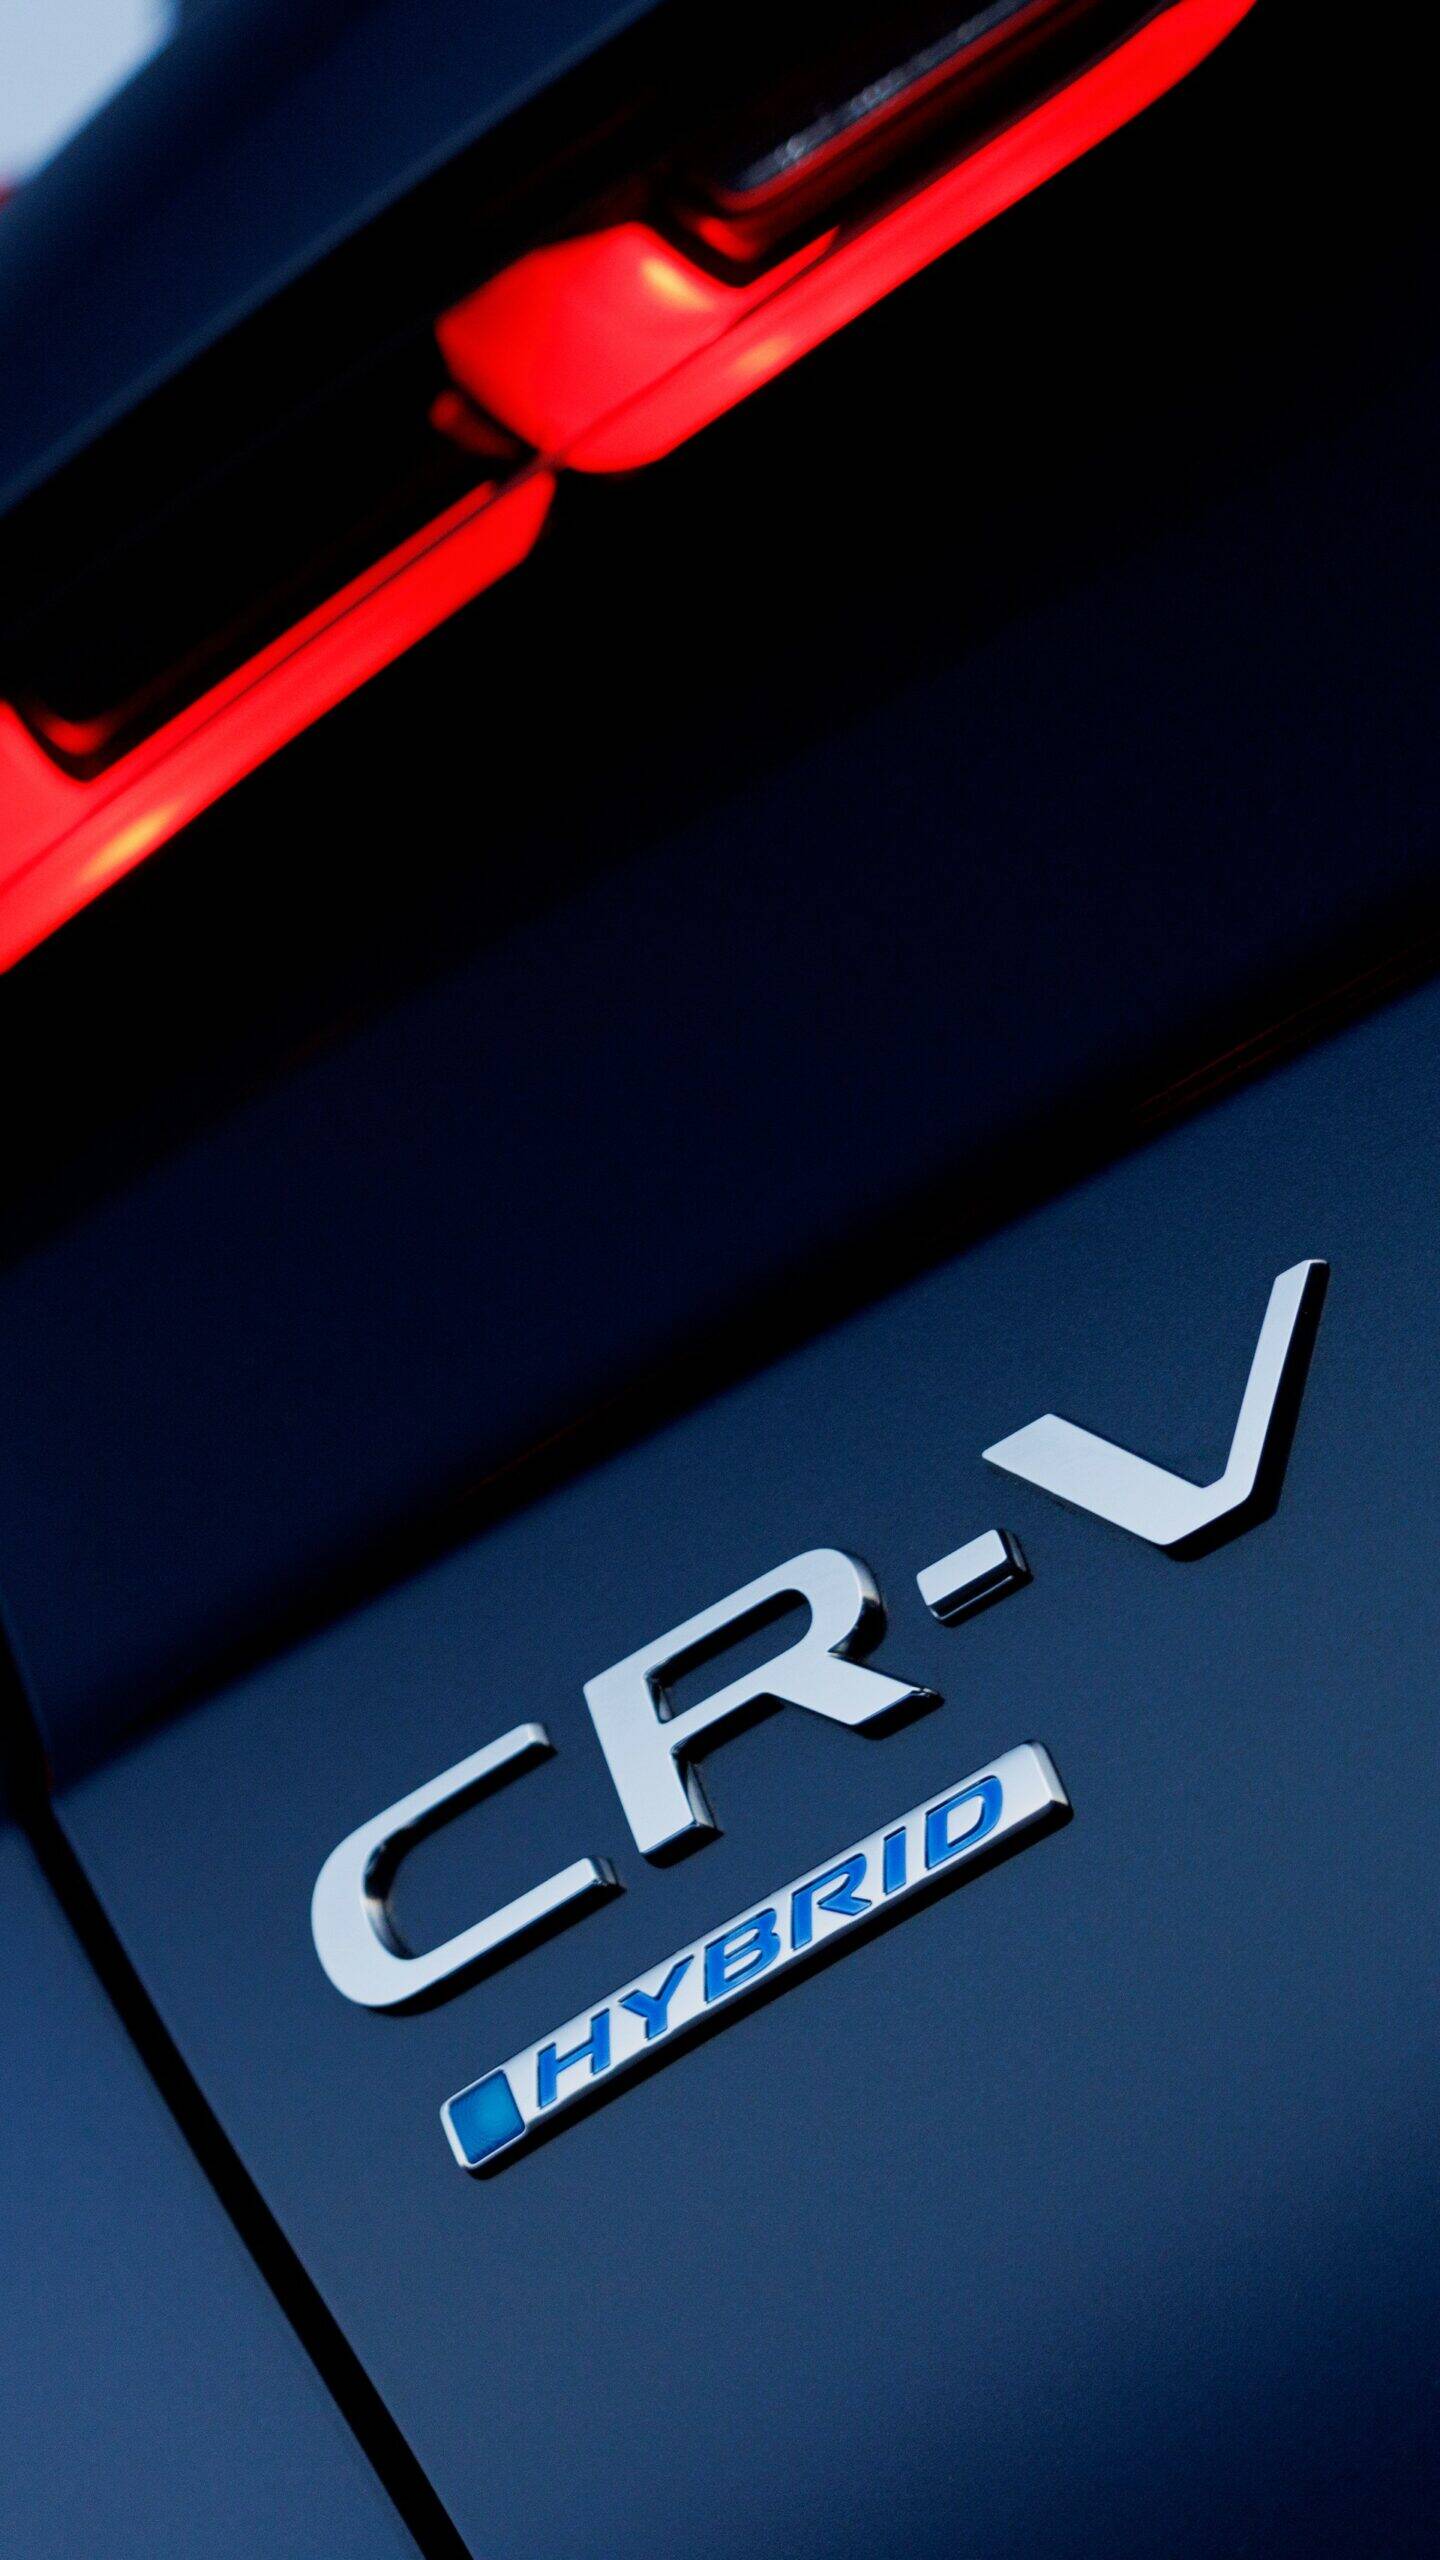 Honda CR-V 2023. Foto: Divulgação